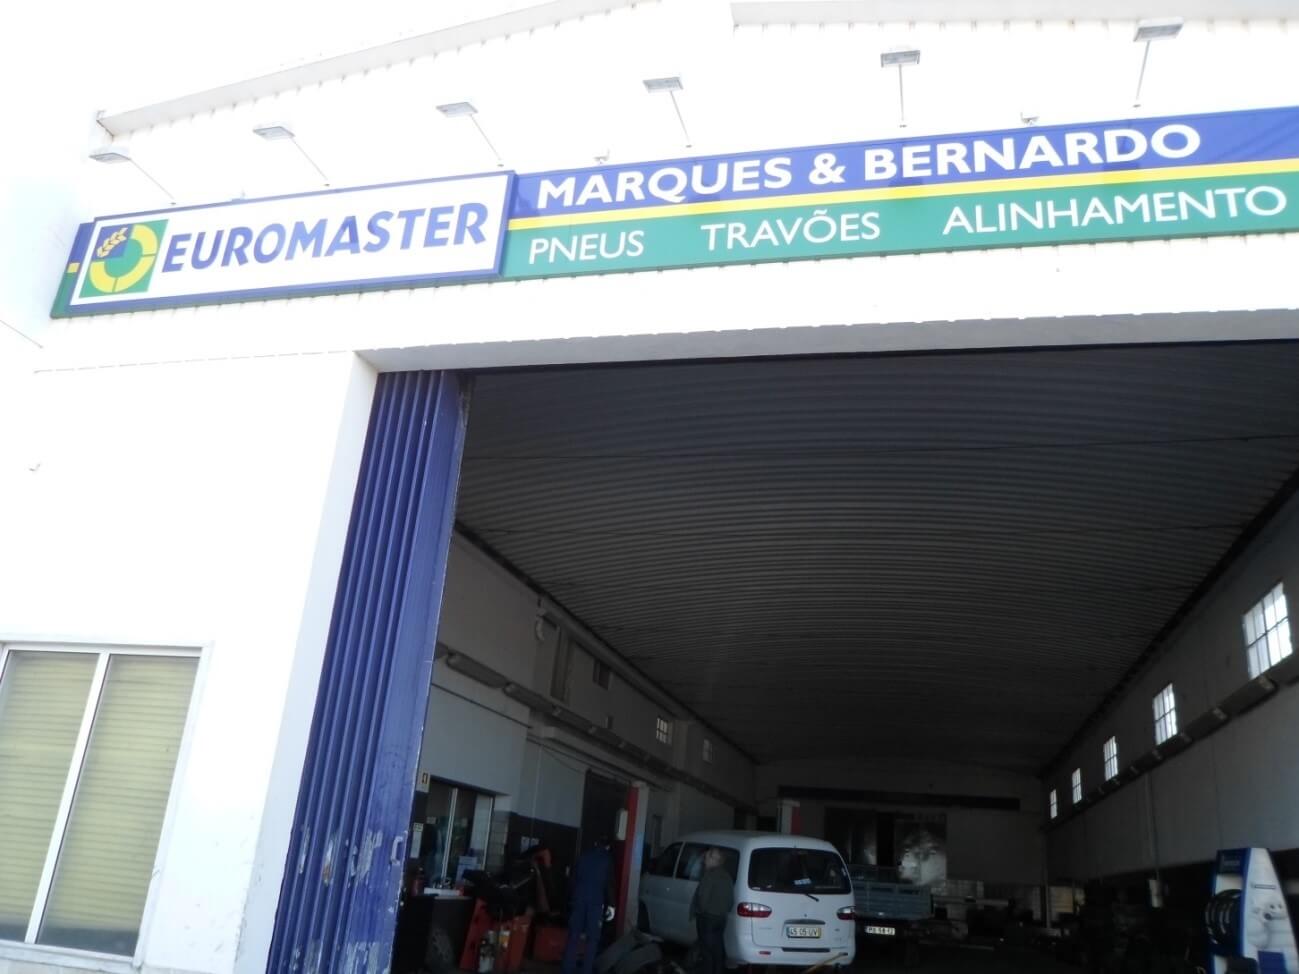 Images Euromaster Marques & Bernardo